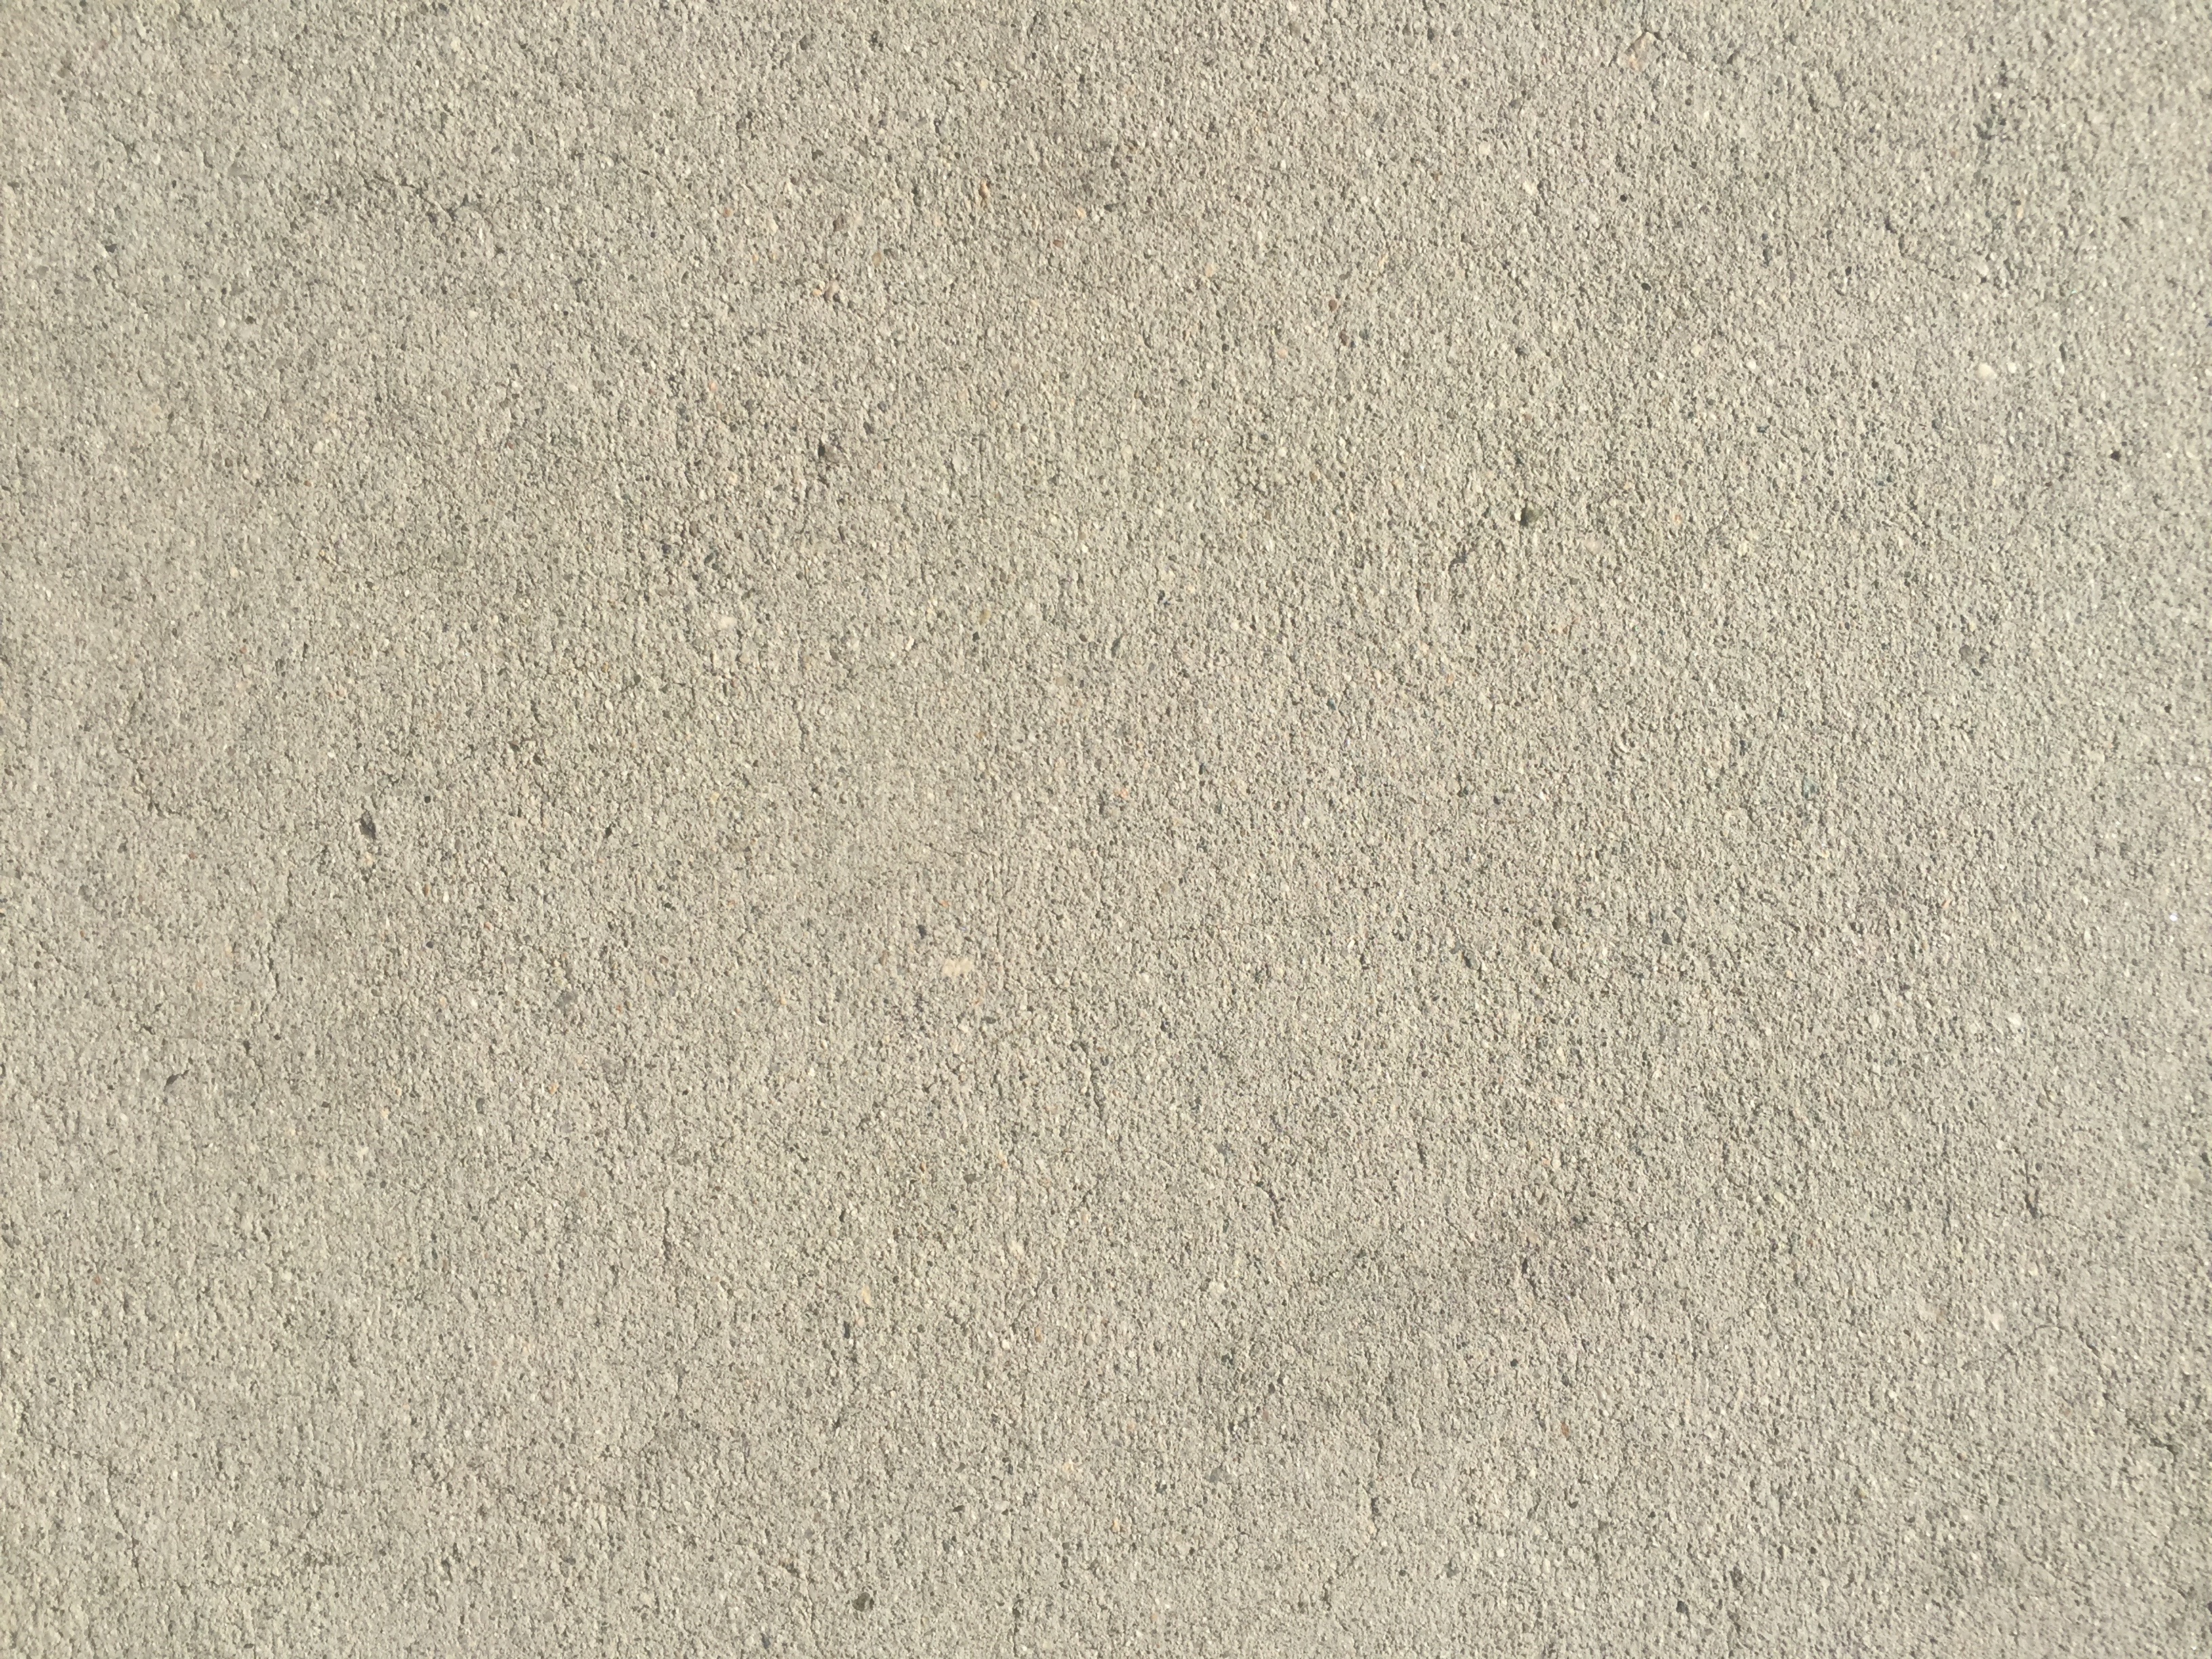 Off White Concrete Texture Free Textures